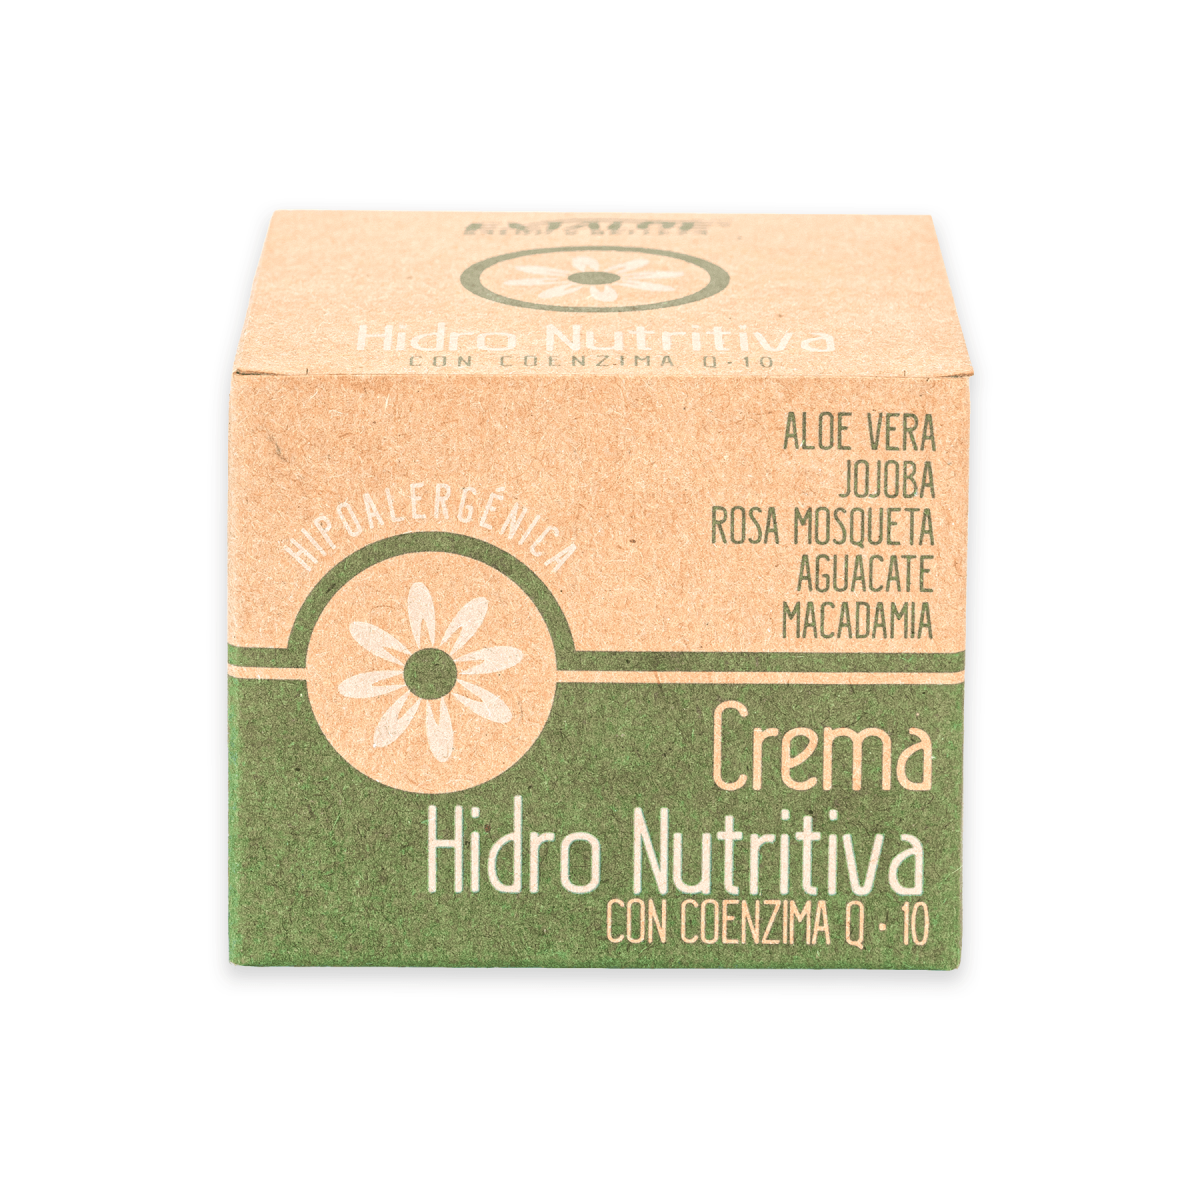 Crema hidro-nutritiva con coenzima Q10